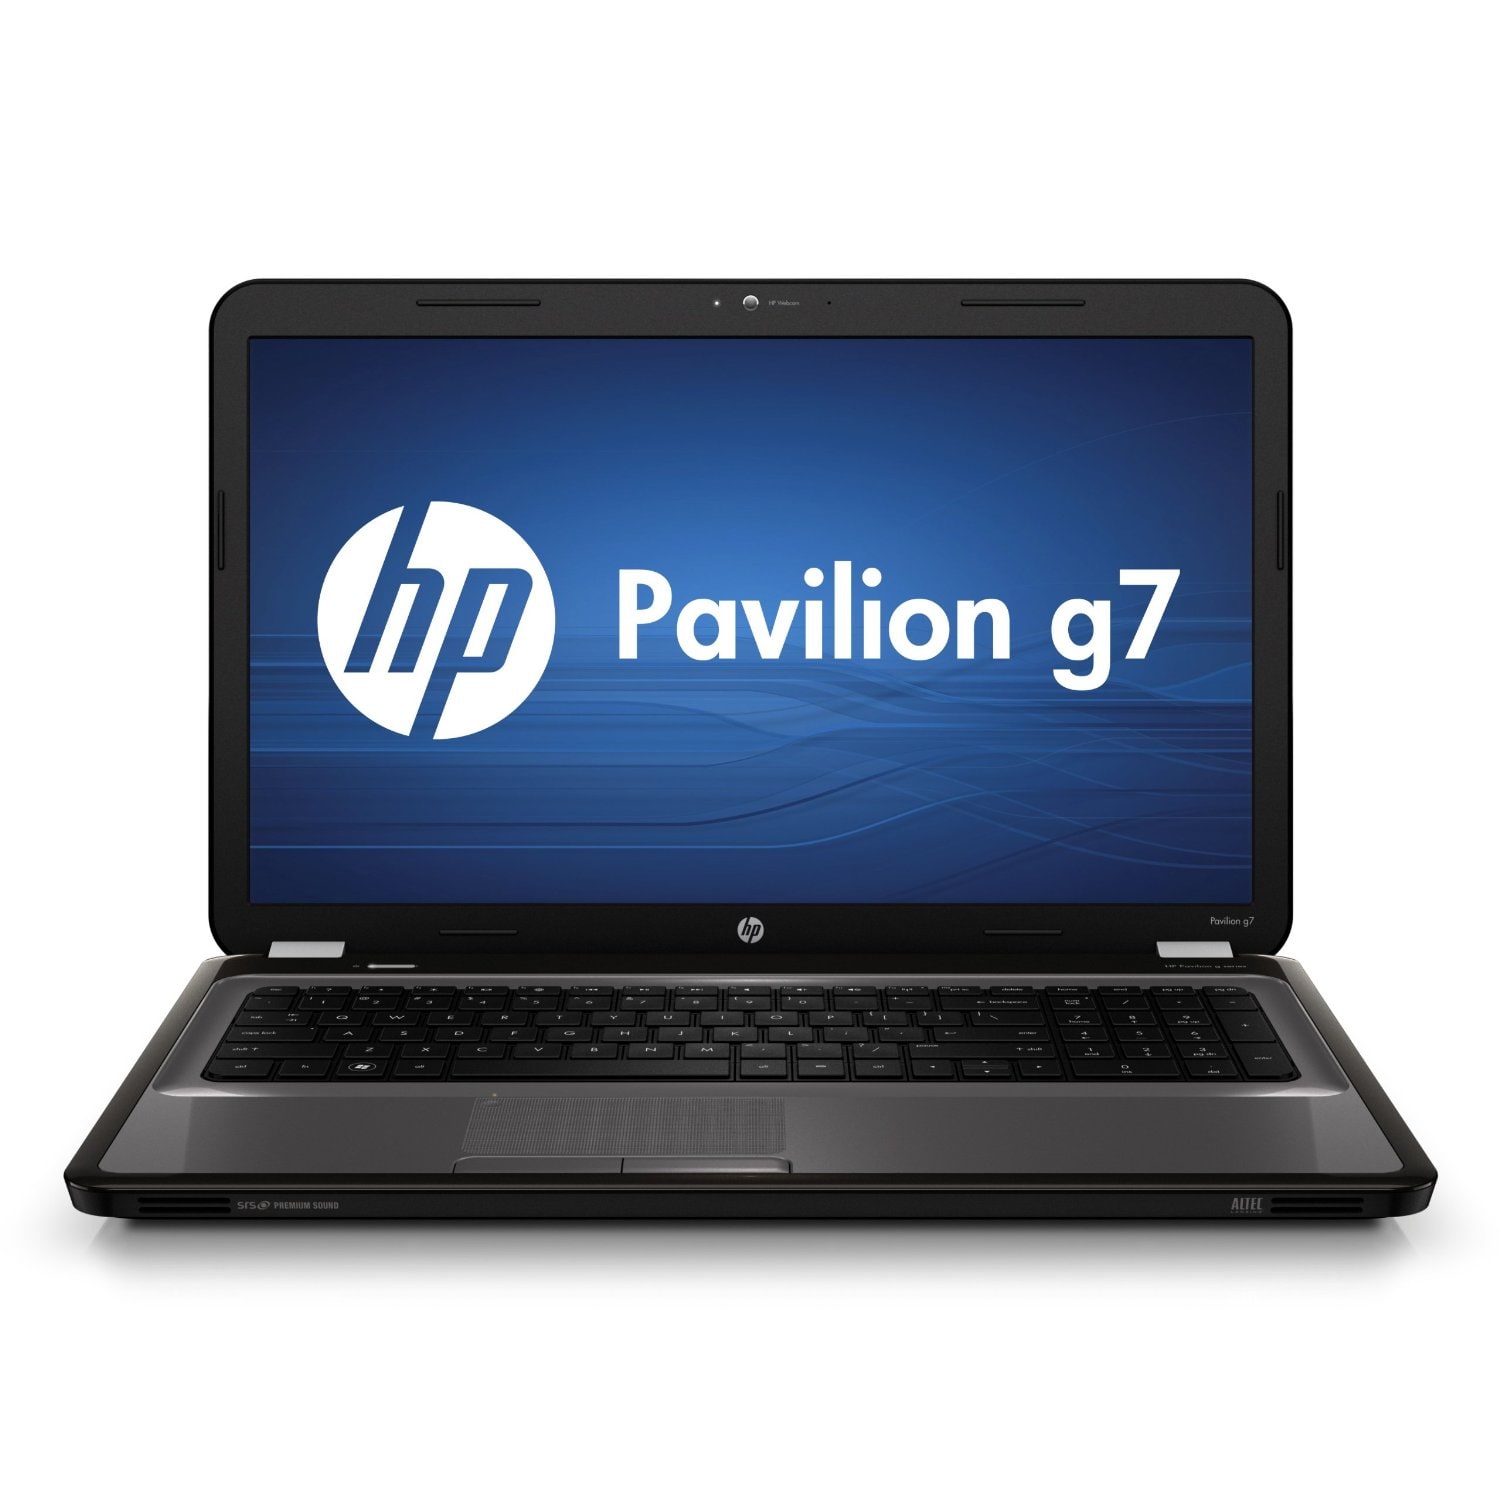 HP Pavilion g7-1310us i3 2.3GHz 640GB 17.3-inch Laptop (Refurbished ...